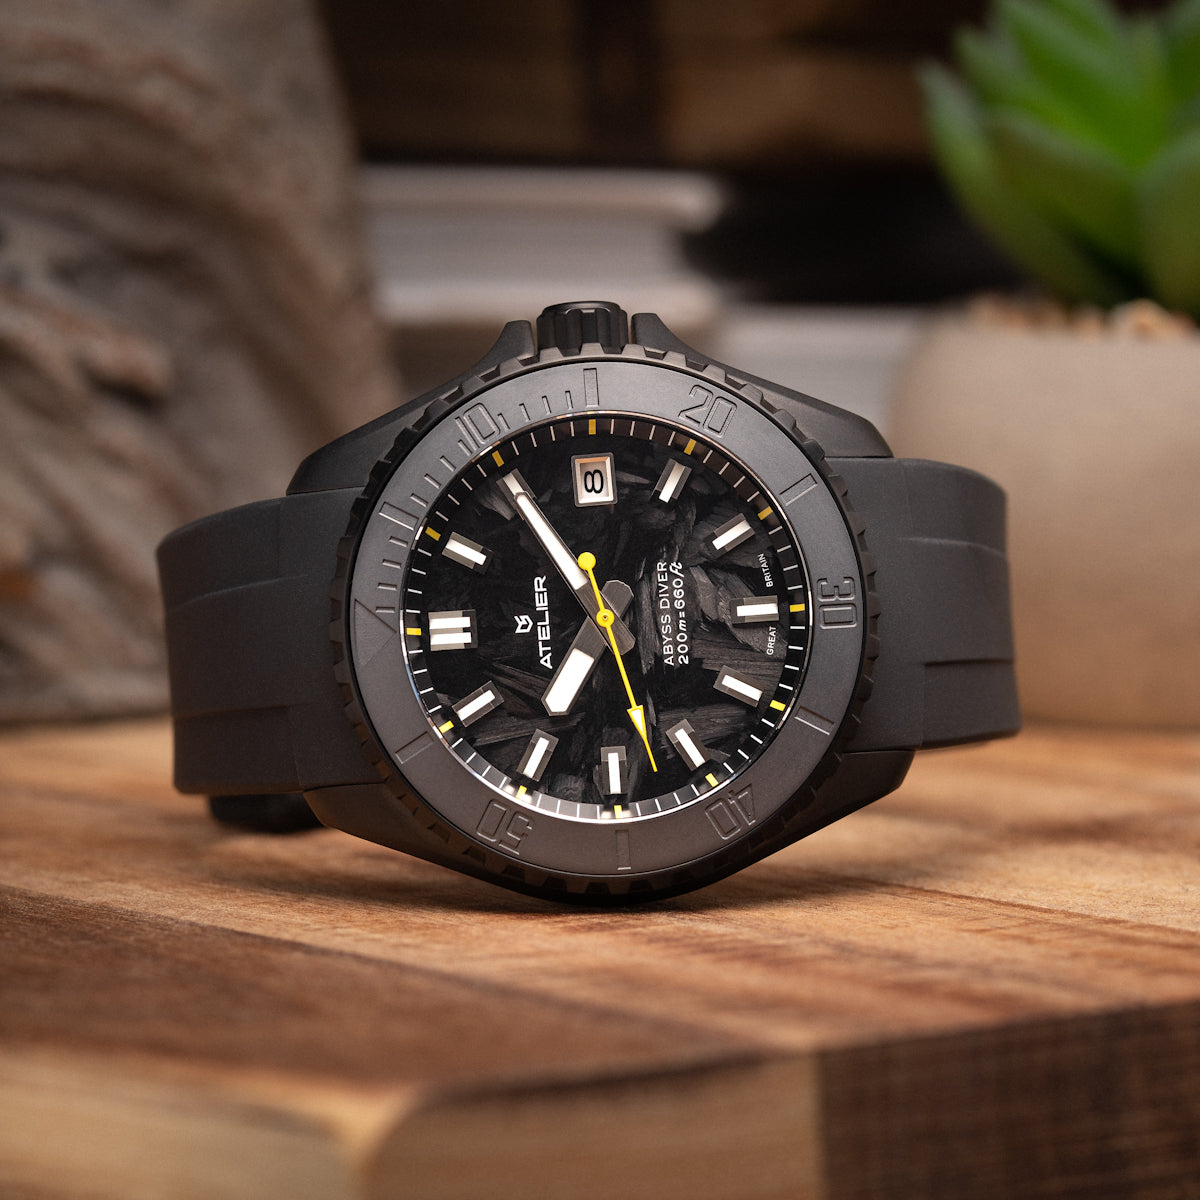 Carbon fibre watch 